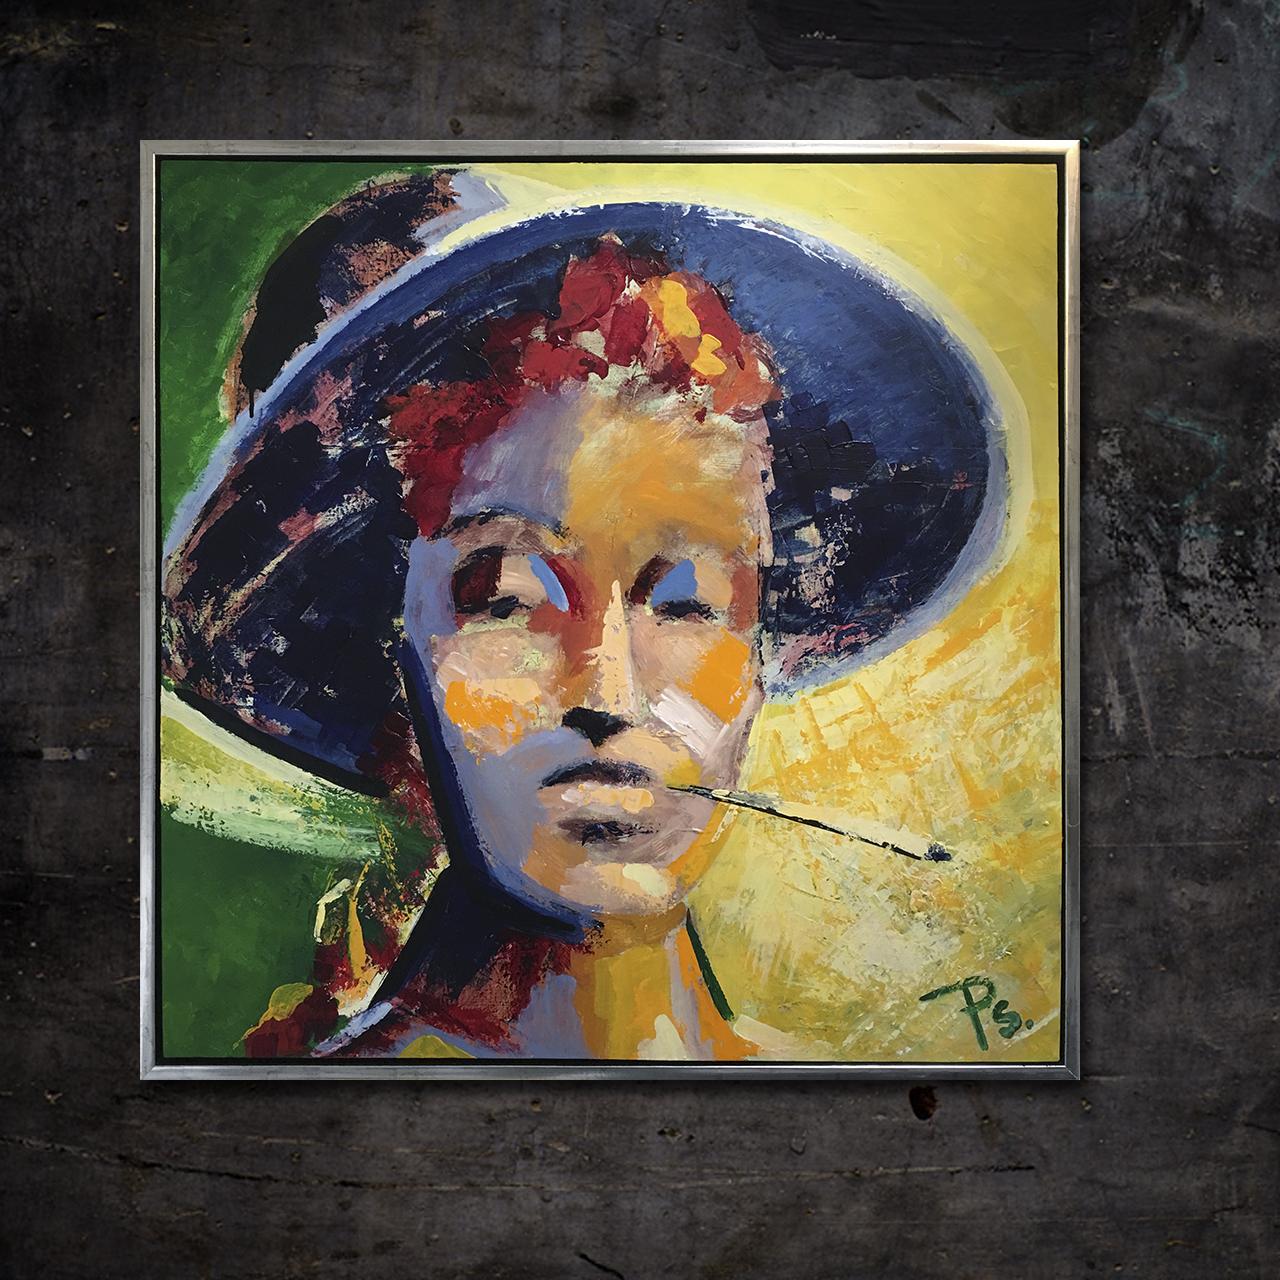 Portrætmaleri 'Kvinde med Cigaret'. Malet med pensel og paletniv på opspændt lærred af portrætmaler Peter Simonsen.